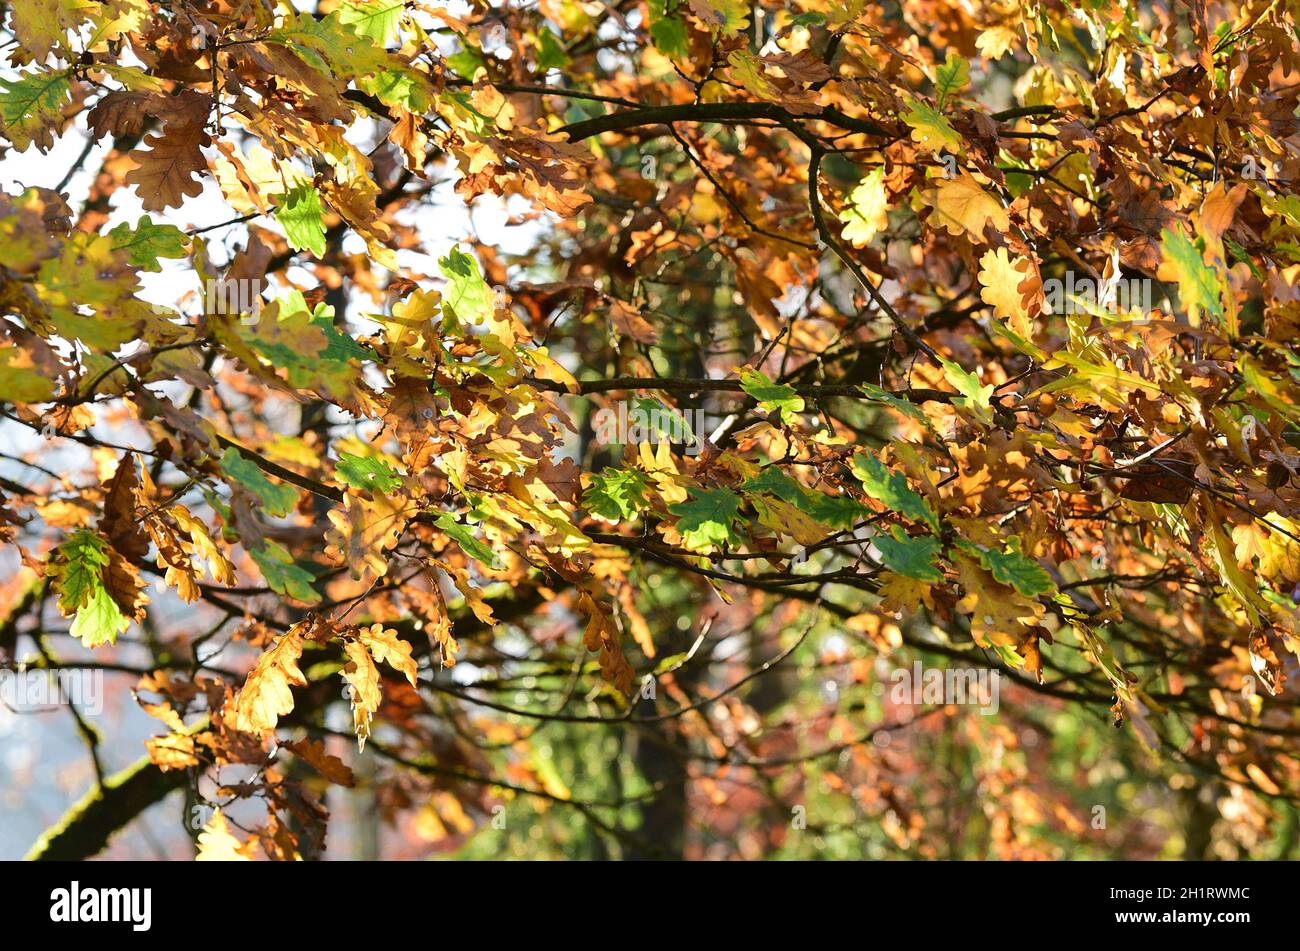 Herbstlicher Laubwald in Österreich, Europa - Autumn deciduous forest in Austria, Europe Stock Photo